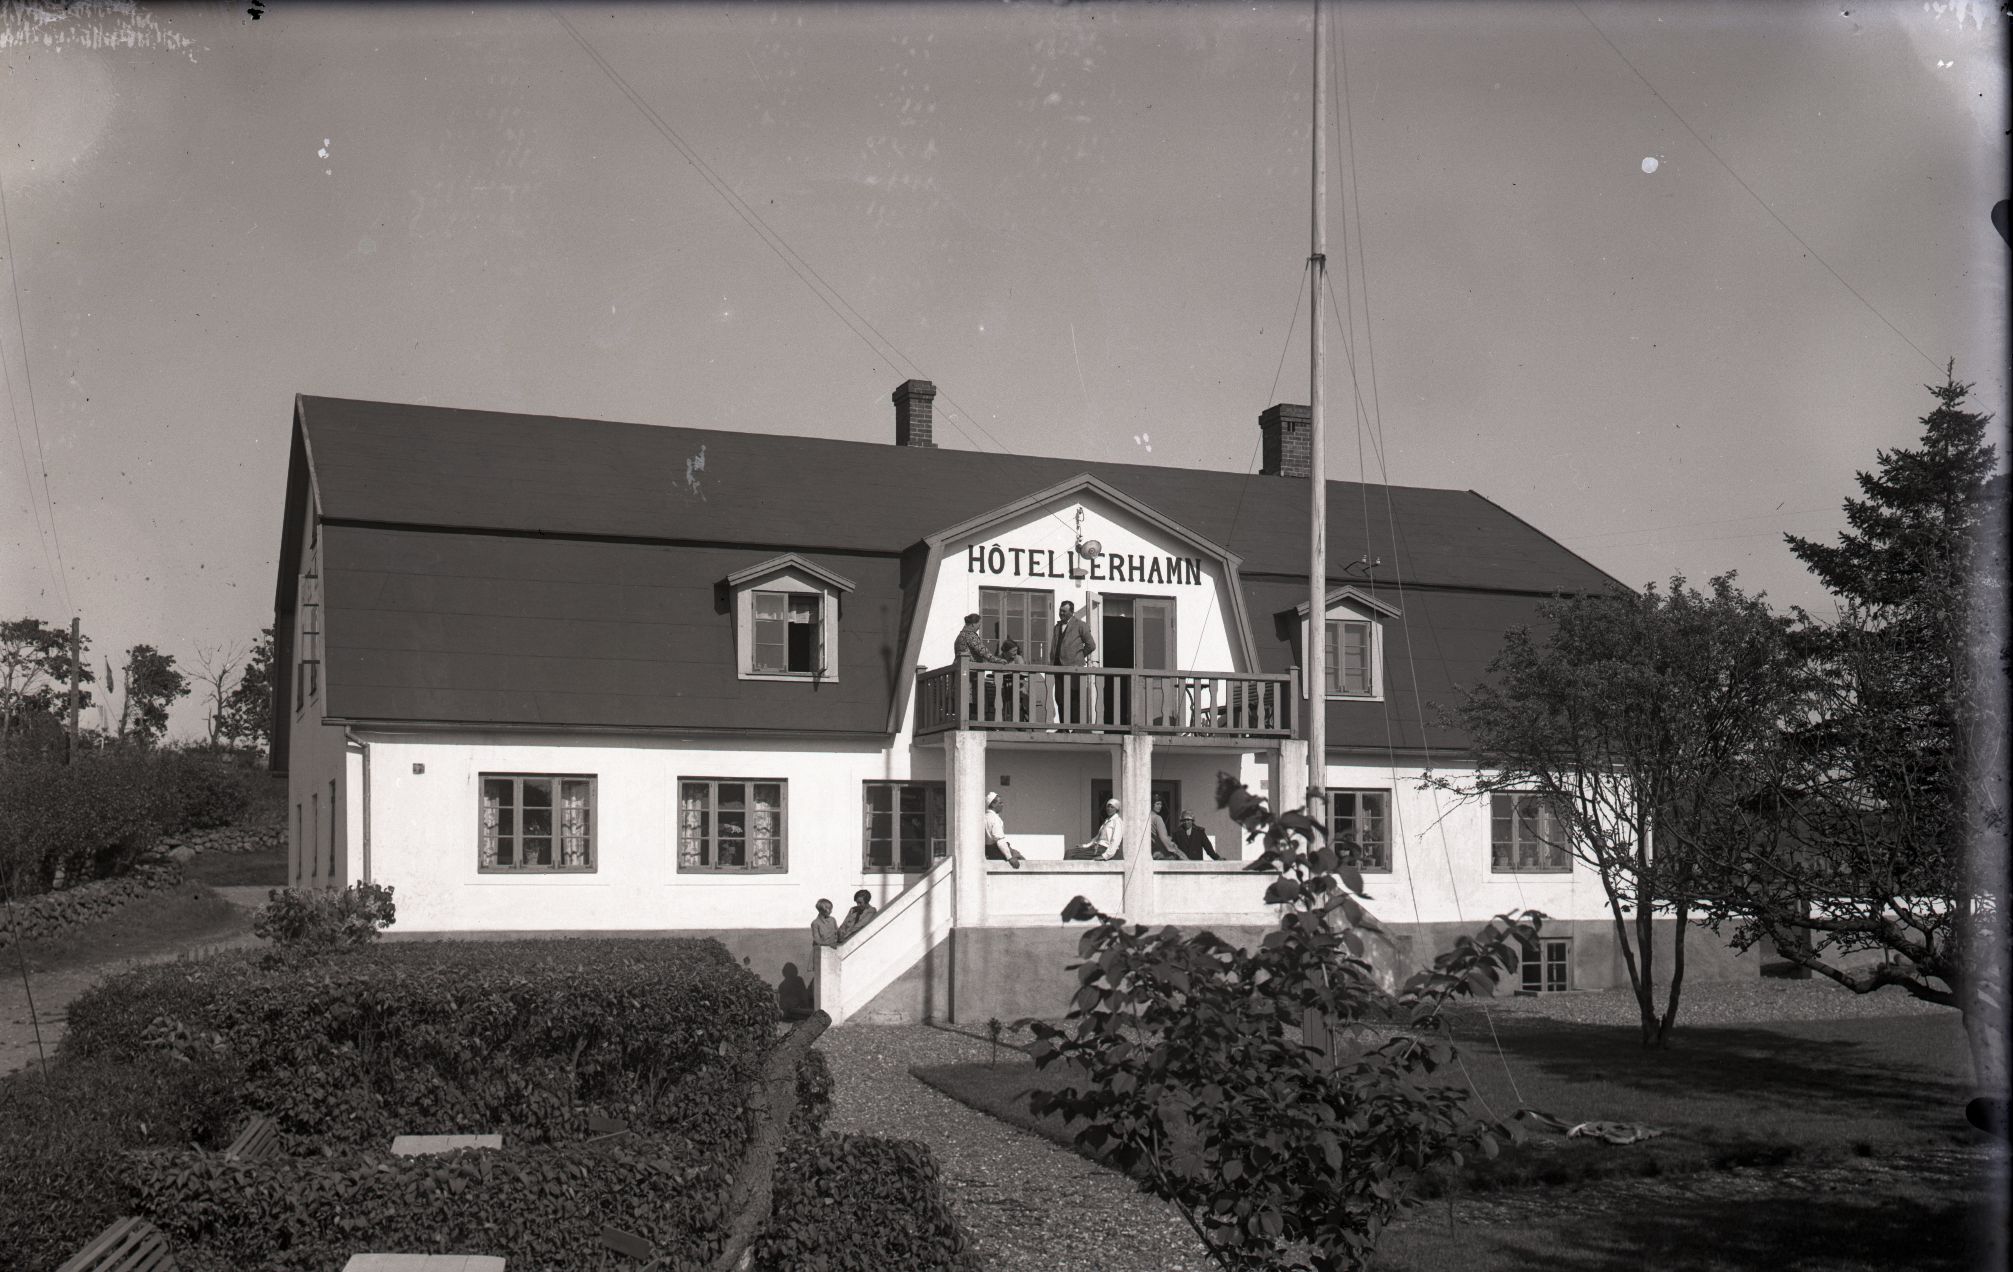 Hotell Lerhamn